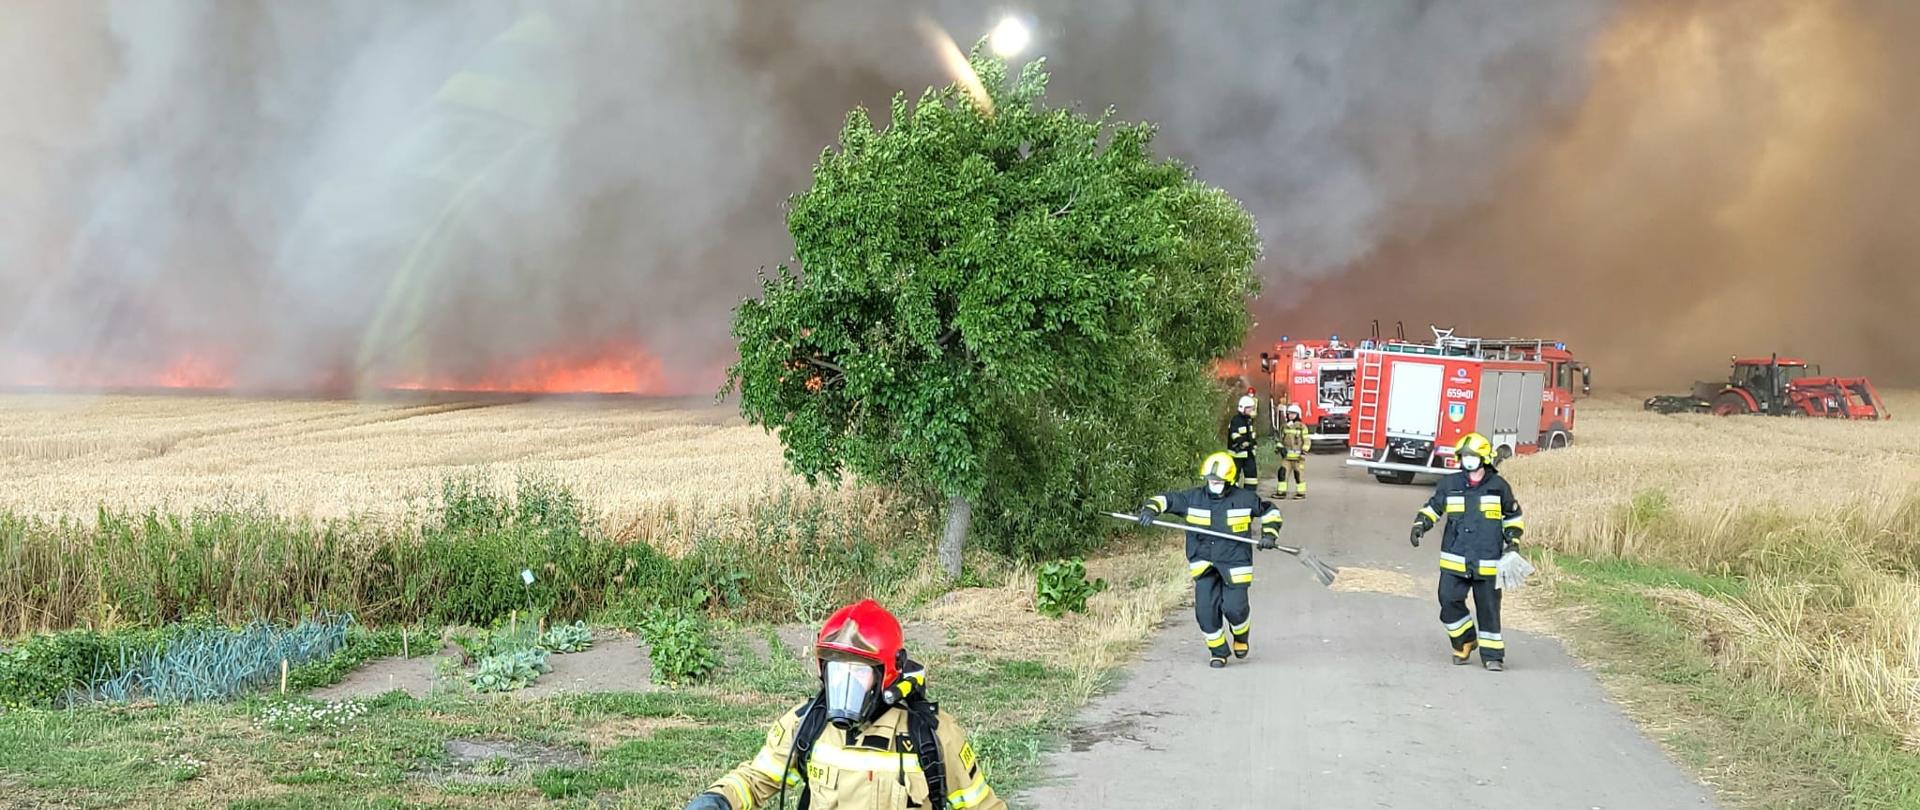 Zdjęcie przedstawia akcję gaśniczą strażaków podczas pożaru.